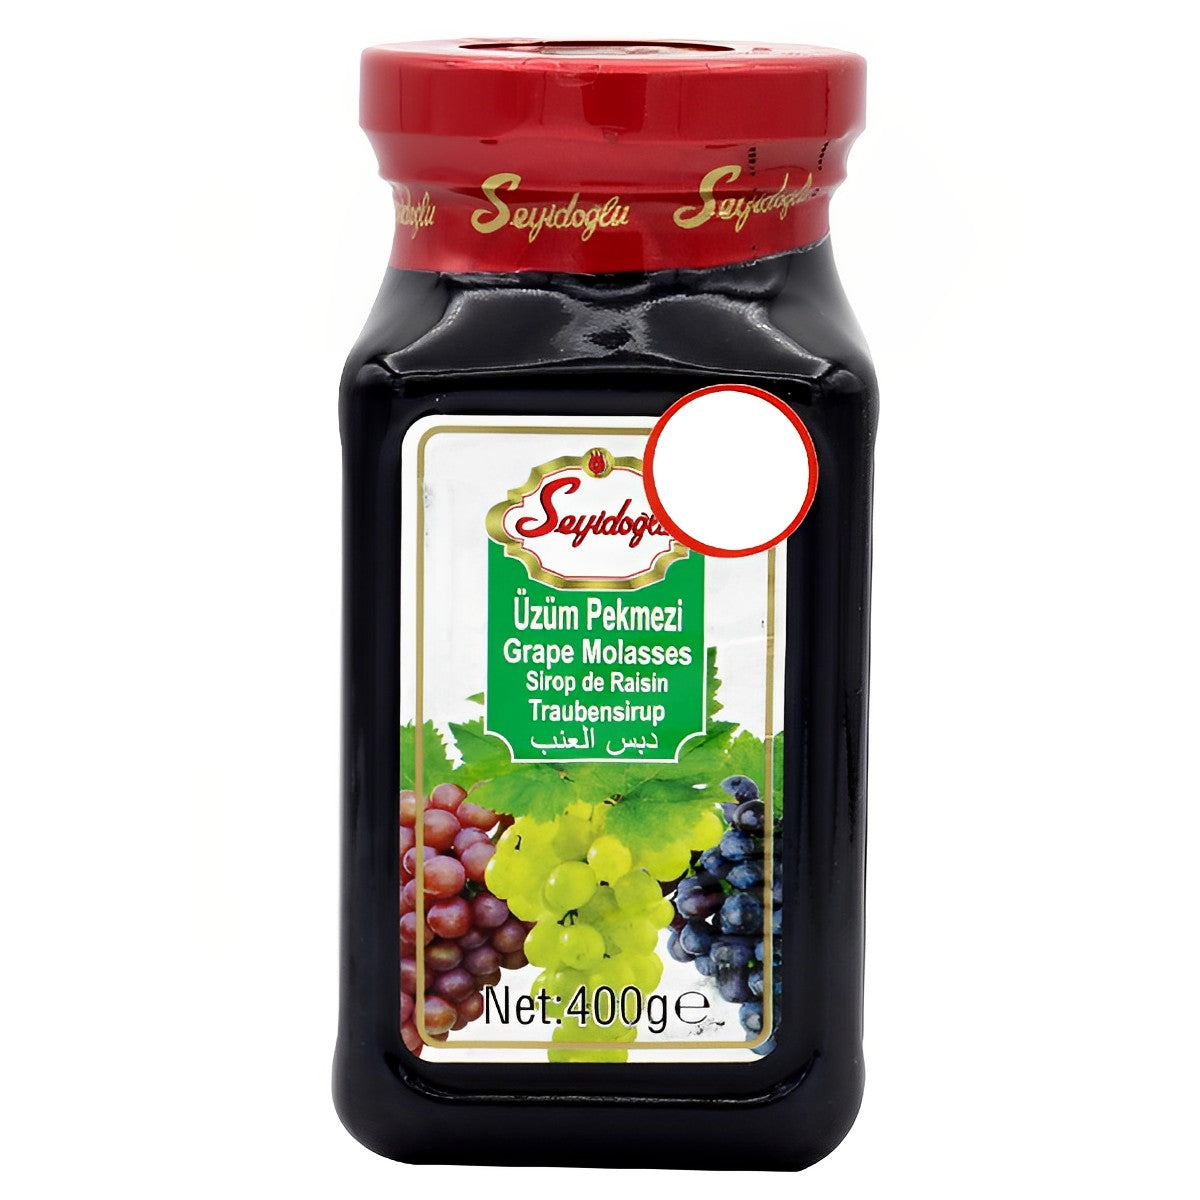 Seyidoglu - Grape Molasses - 400g - Continental Food Store